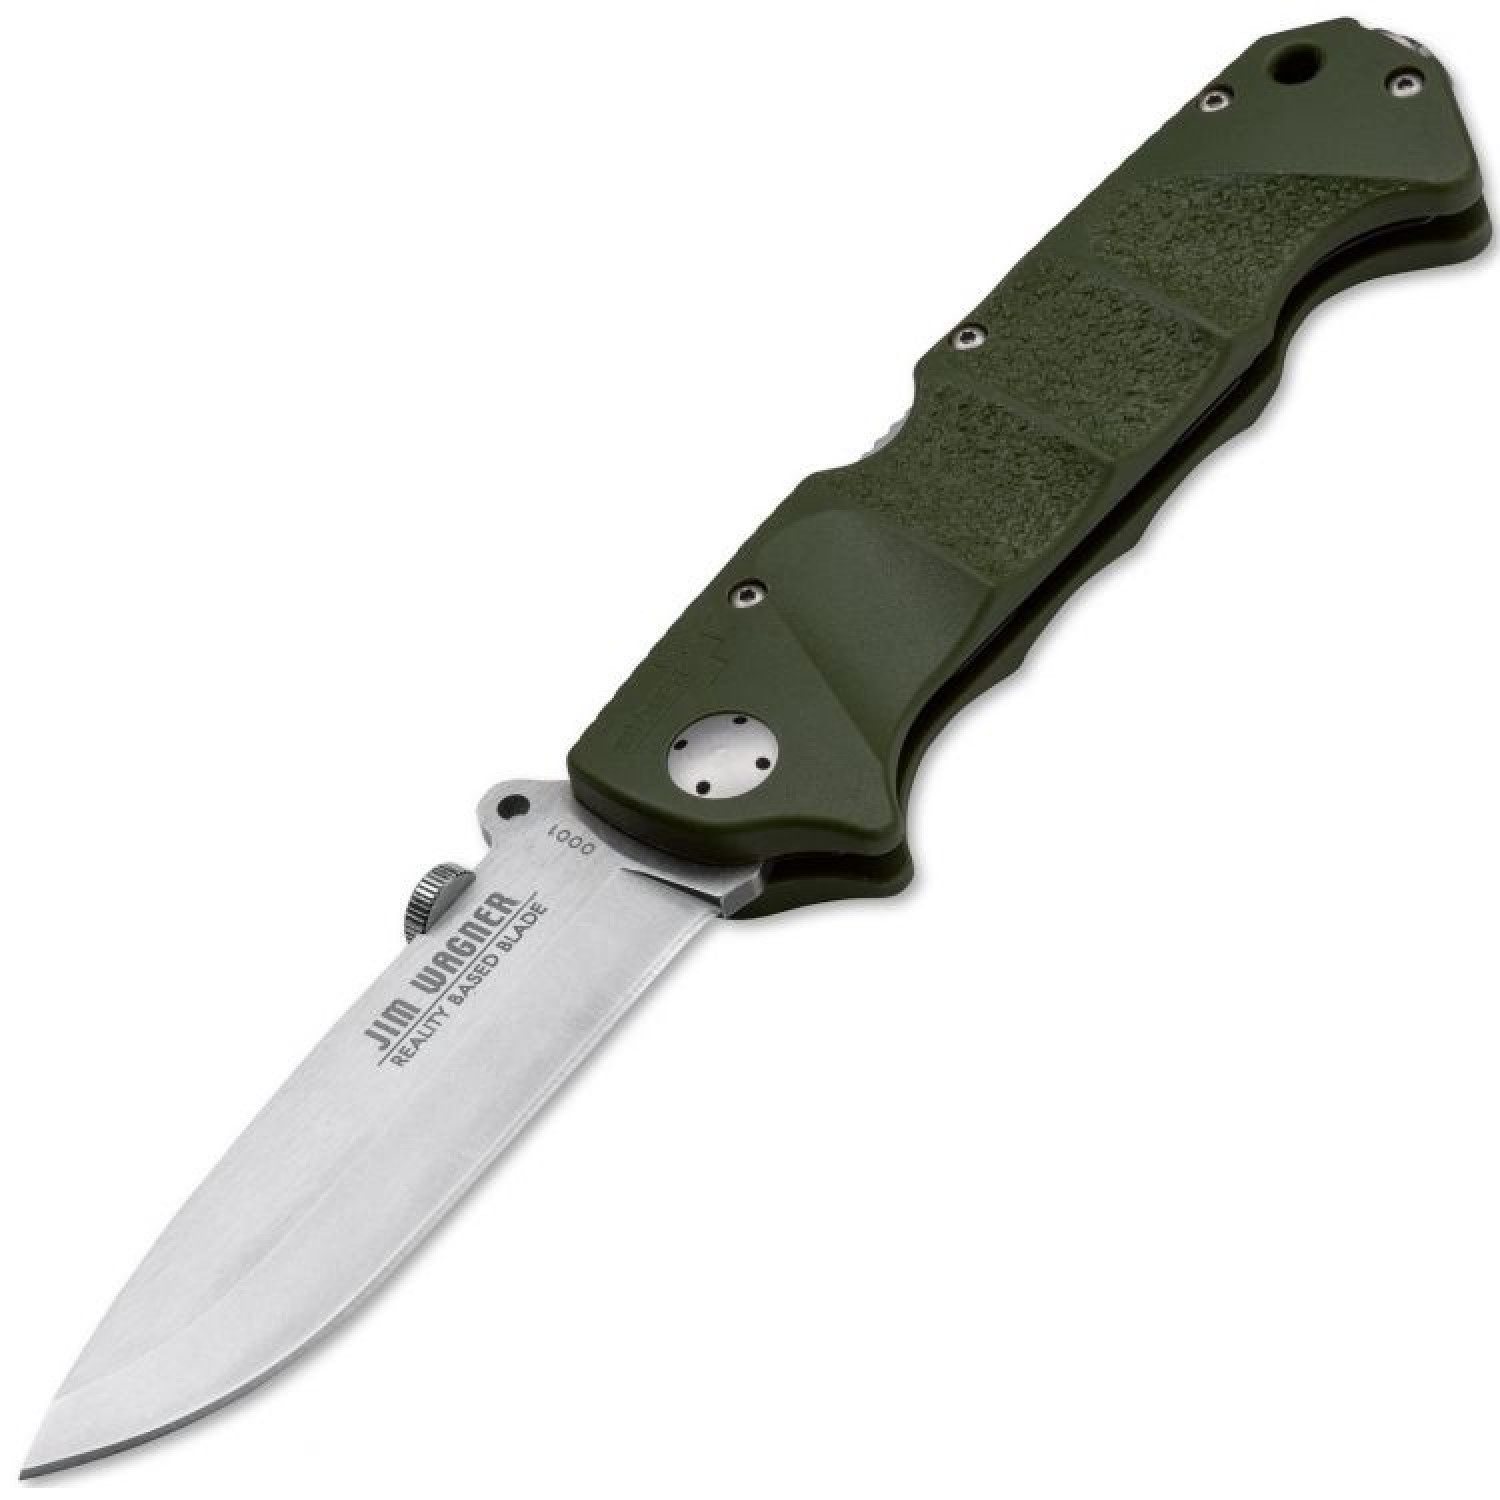 Нож складной RBB (Reality-Based Blades) Bushcraft, Jim Wagner Design, Boker 01BO063, сталь 440C Satin, рукоять Zytel® (пластик), зелёный